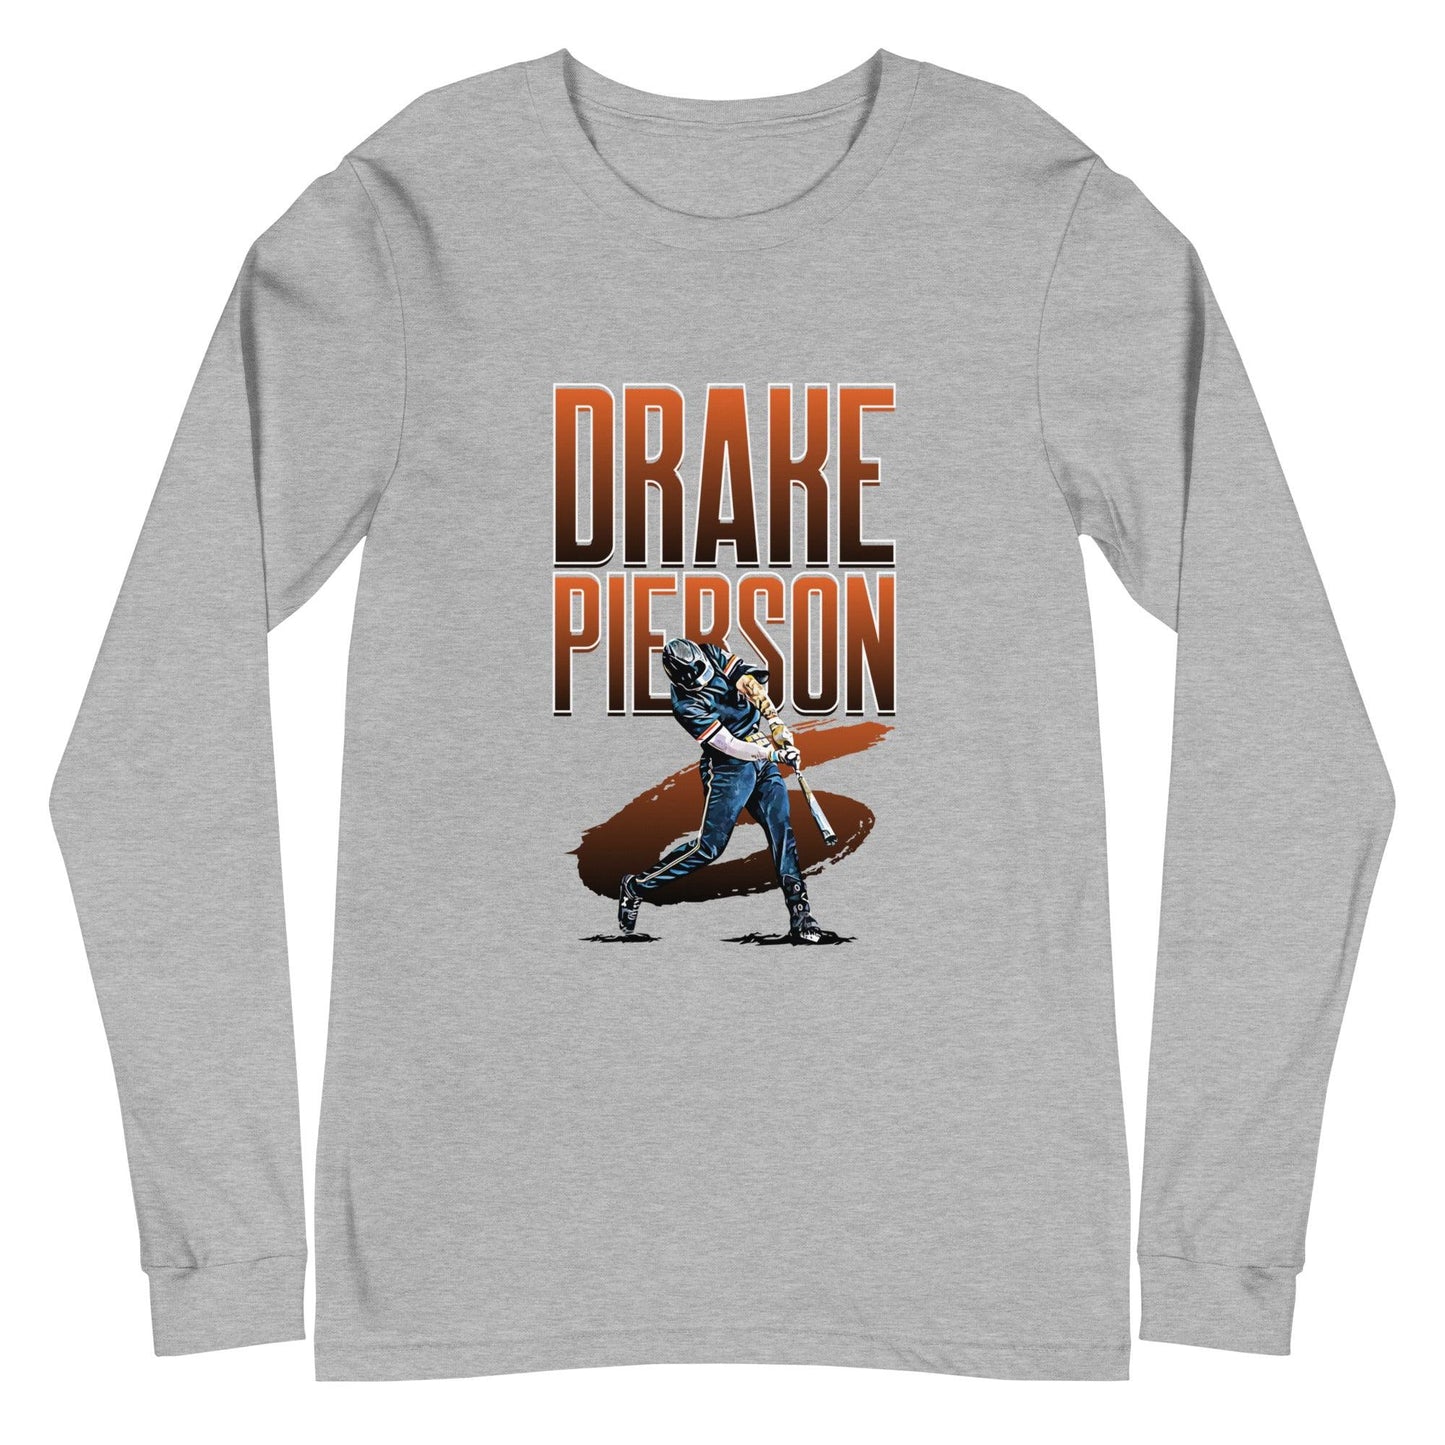 Drake Pierson "Gametime" Long Sleeve Tee - Fan Arch